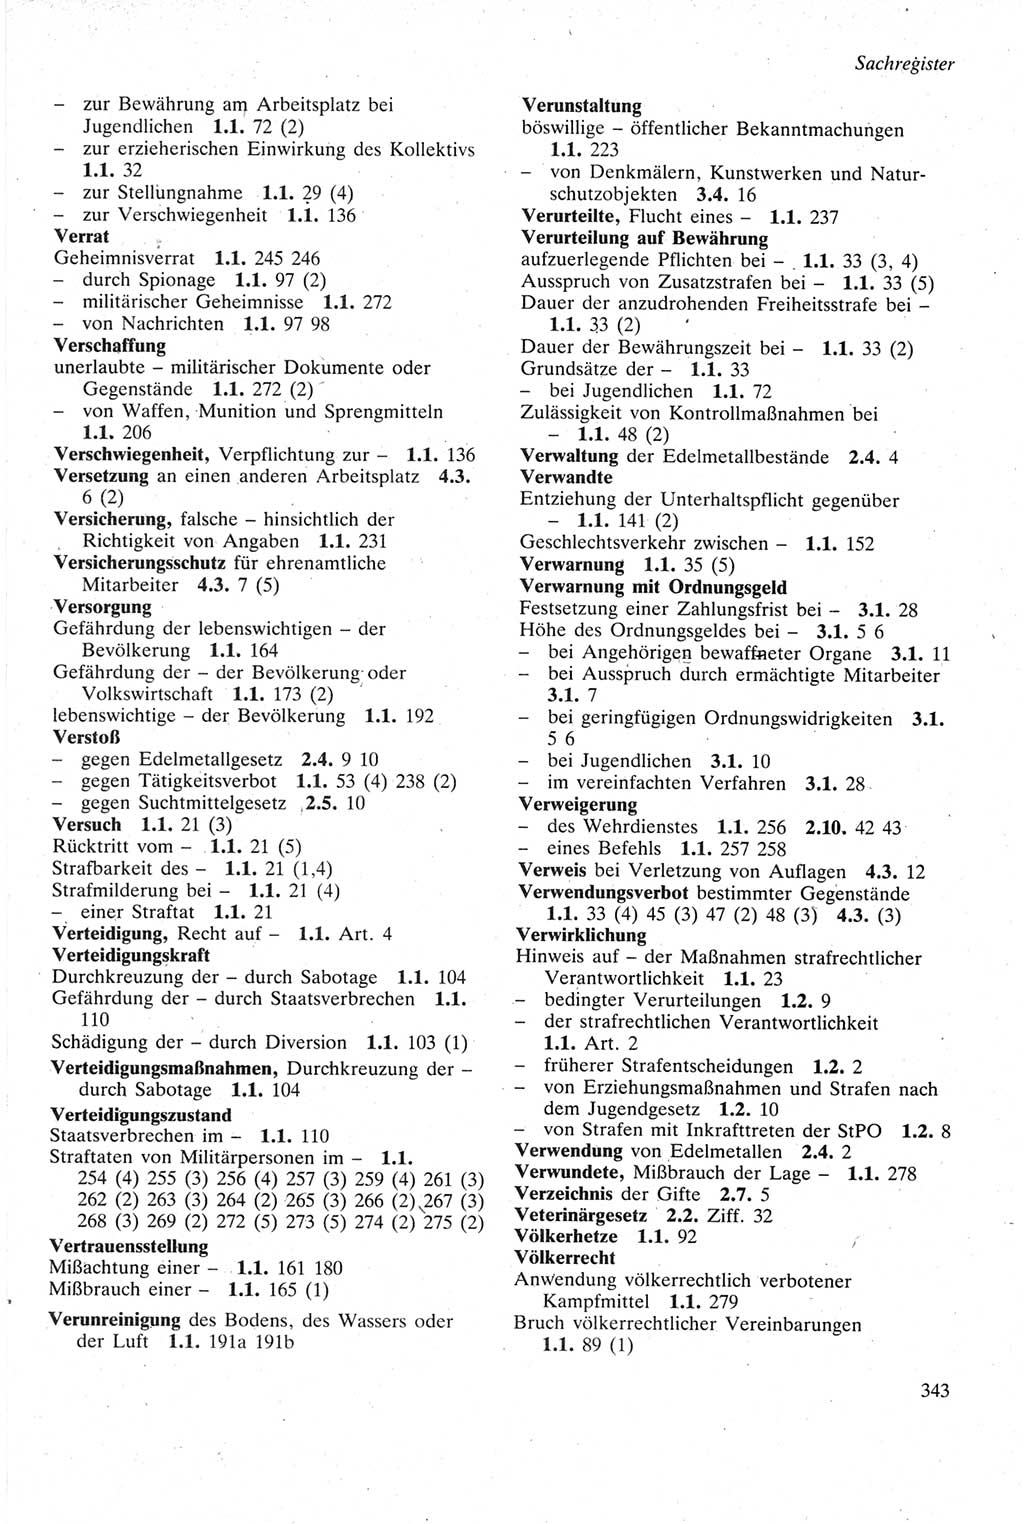 Strafgesetzbuch (StGB) der Deutschen Demokratischen Republik (DDR) sowie angrenzende Gesetze und Bestimmungen 1979, Seite 343 (StGB DDR Ges. Best. 1979, S. 343)